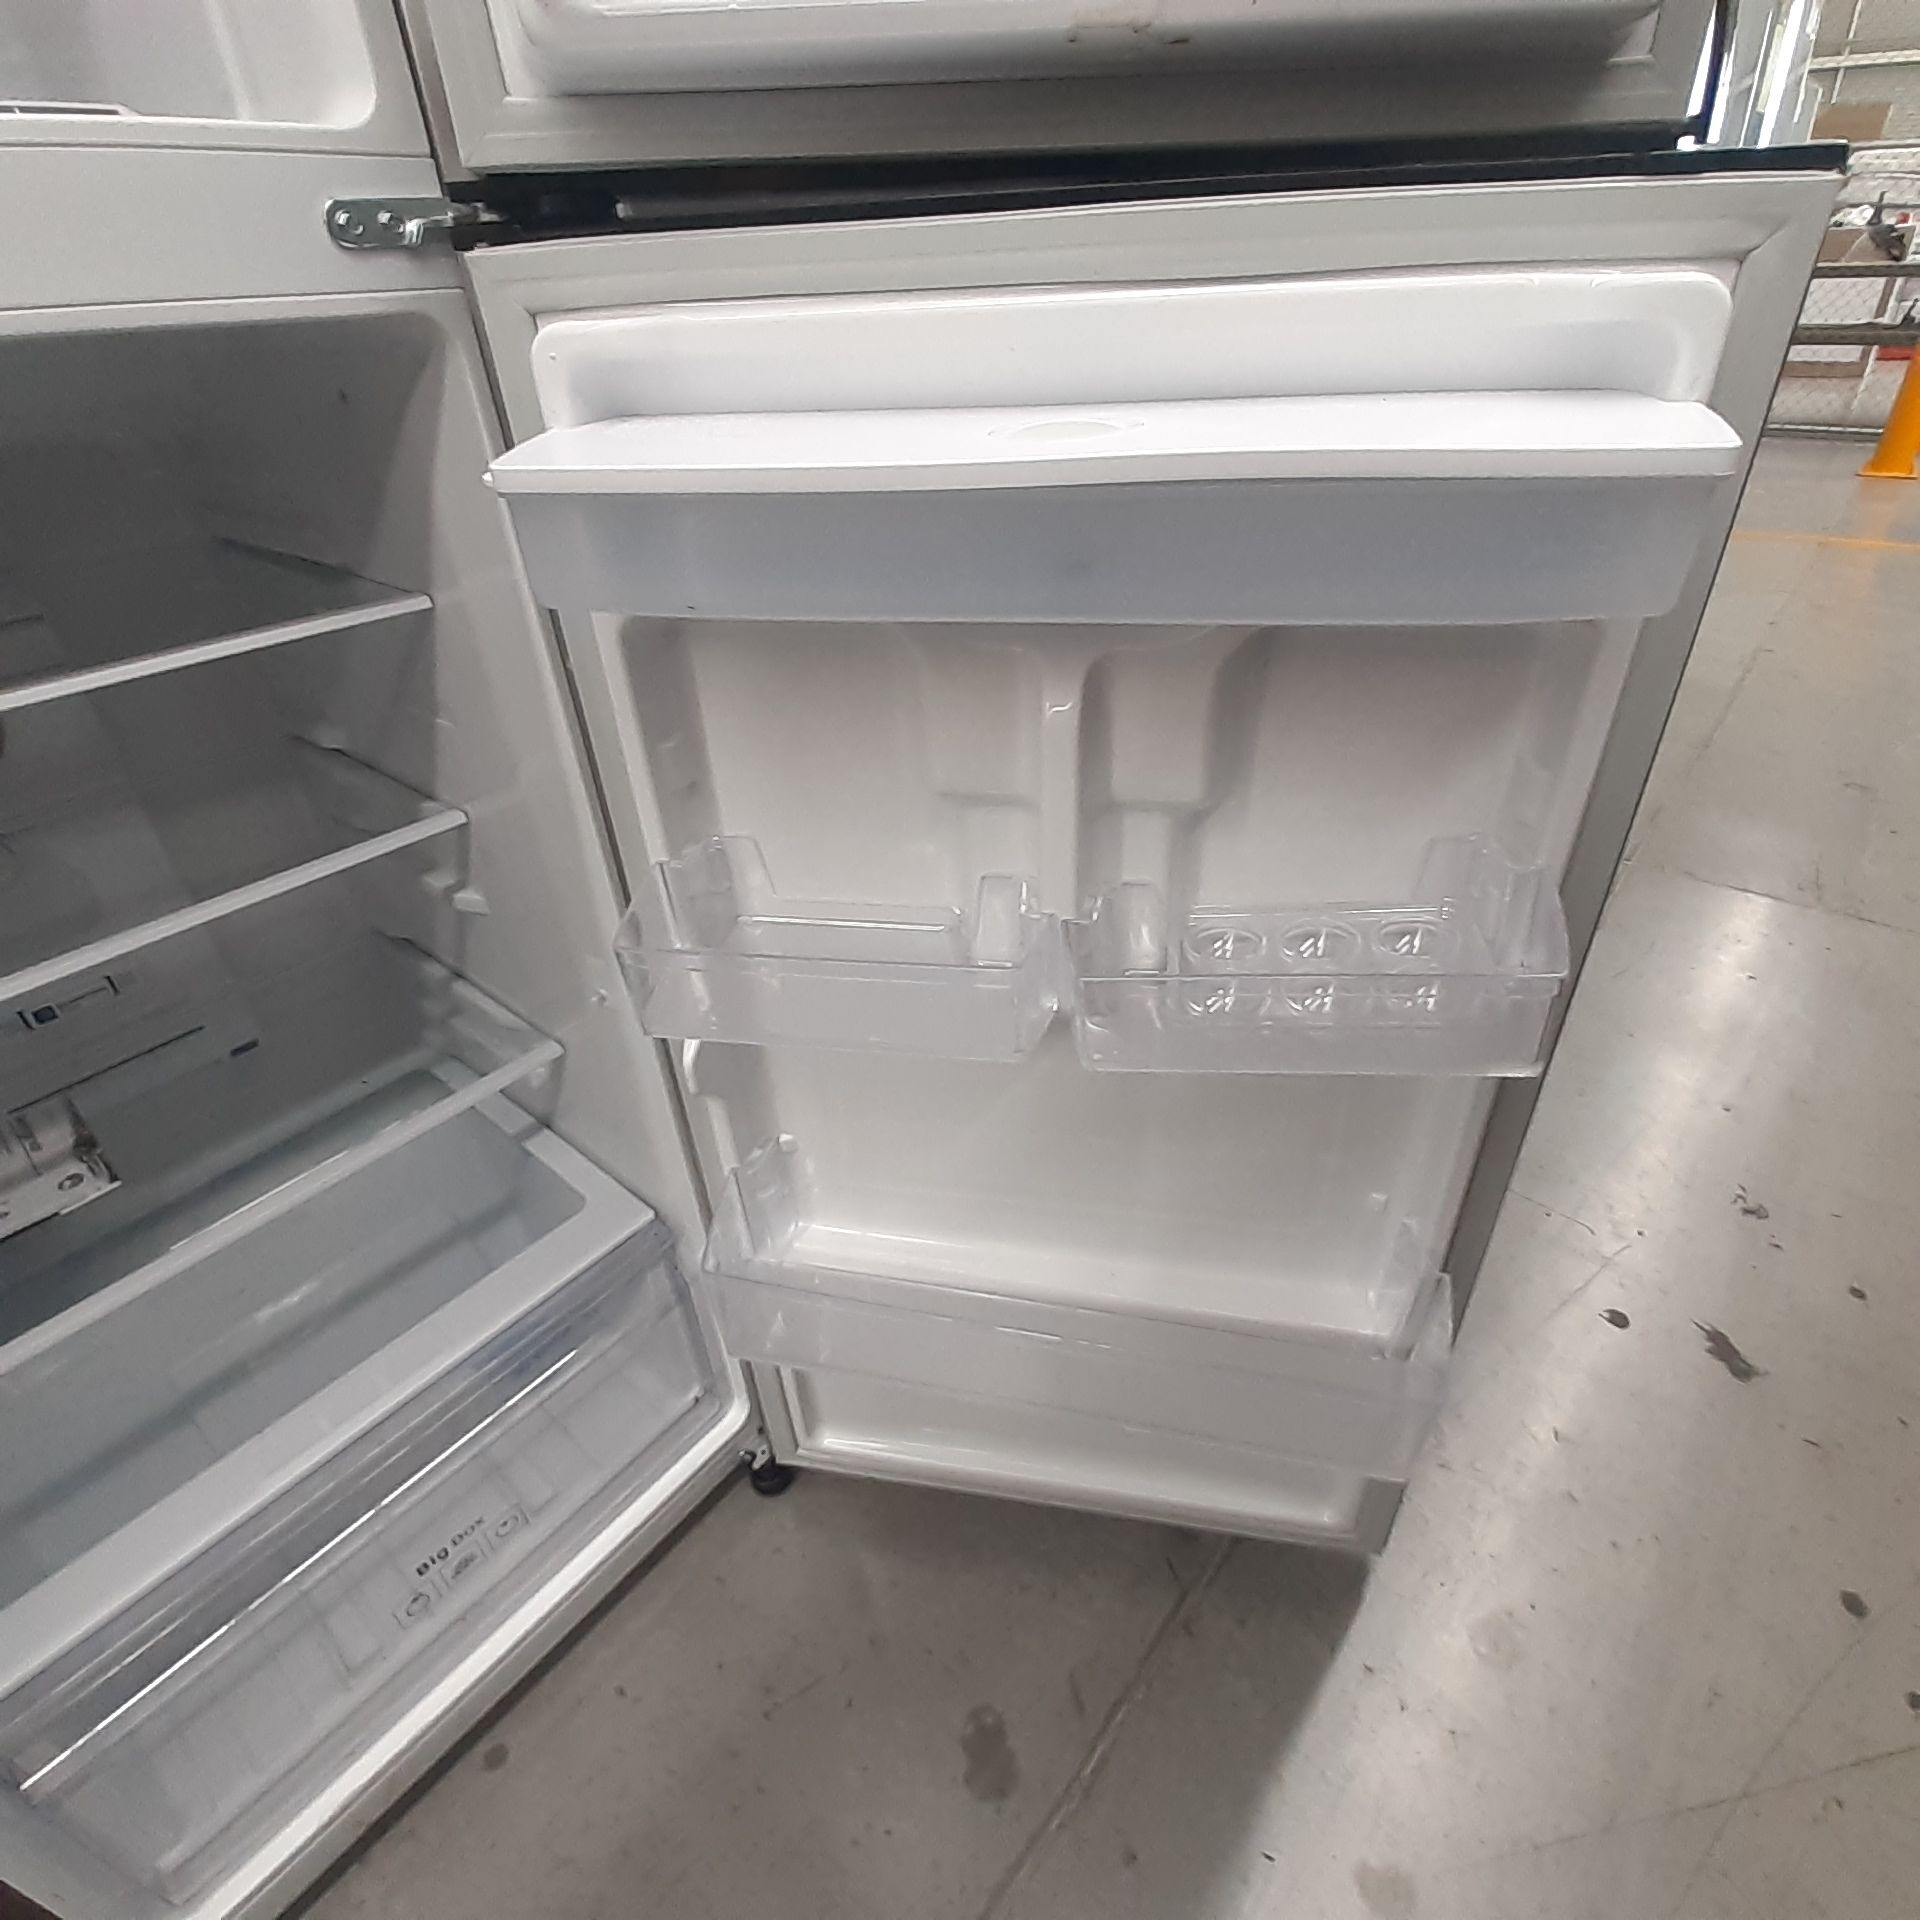 Lote De 2 Refrigeradores: 1 Refrigerador Con Dispensador De Agua Marca Samsung, 1 Refrigerador Marca - Image 12 of 18